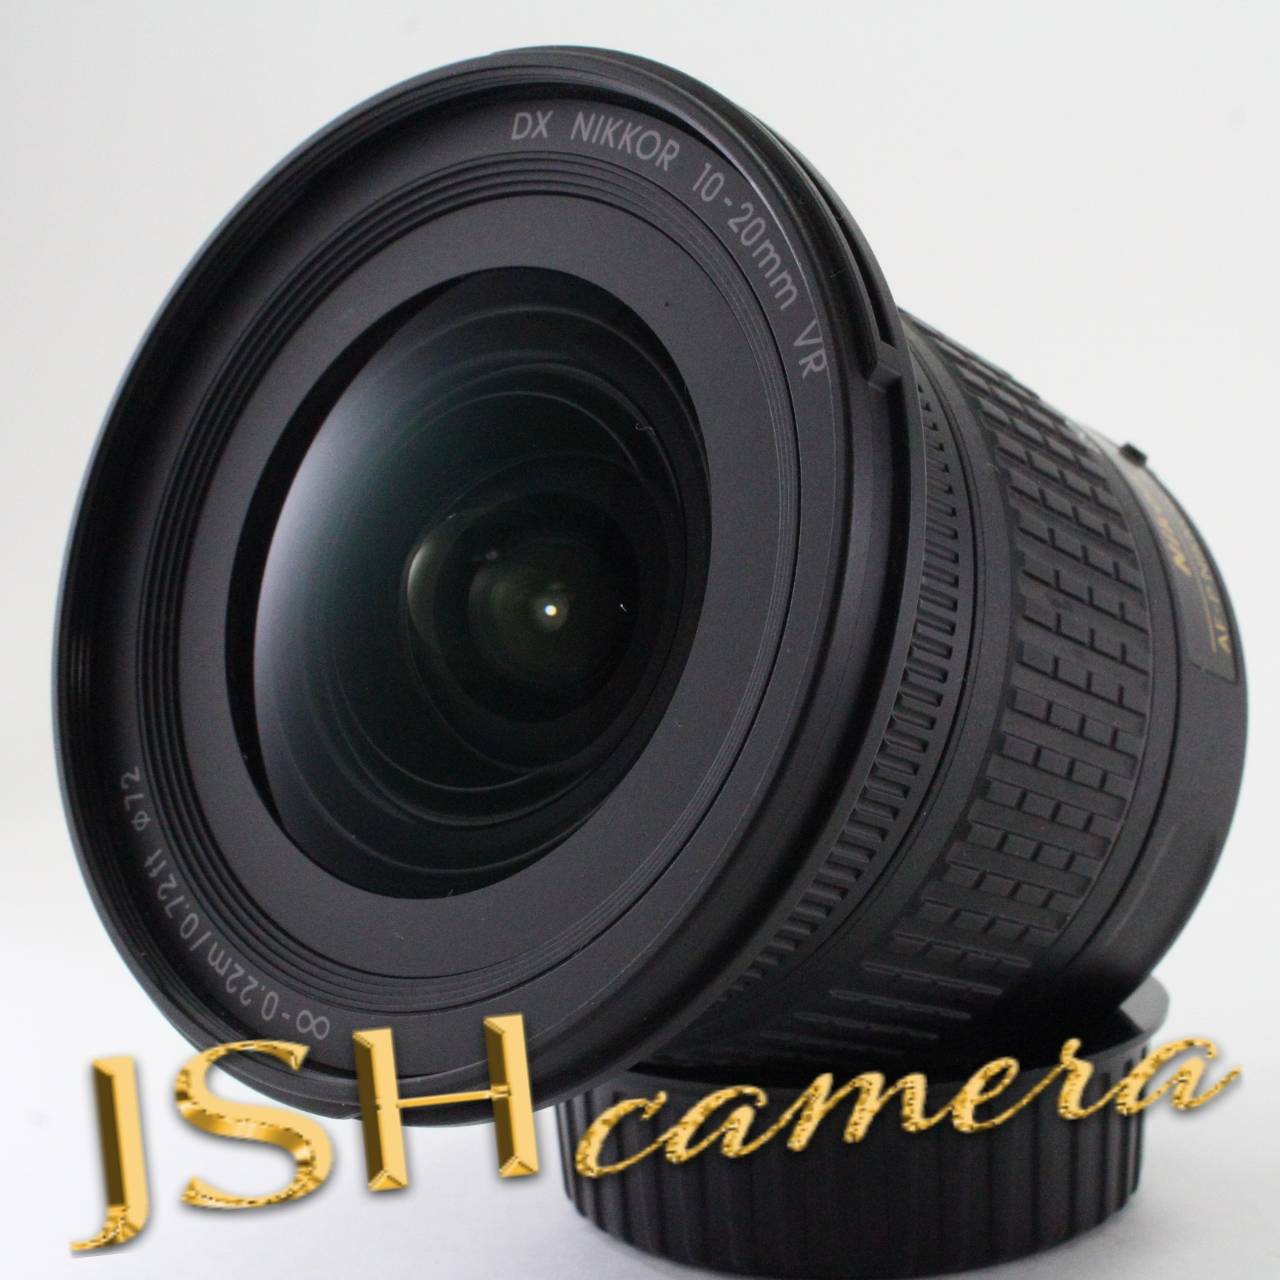 Nikon 広角ズームレンズ AF-P DX NIKKOR 10-20mm f/4.5-5.6G VR ニコン